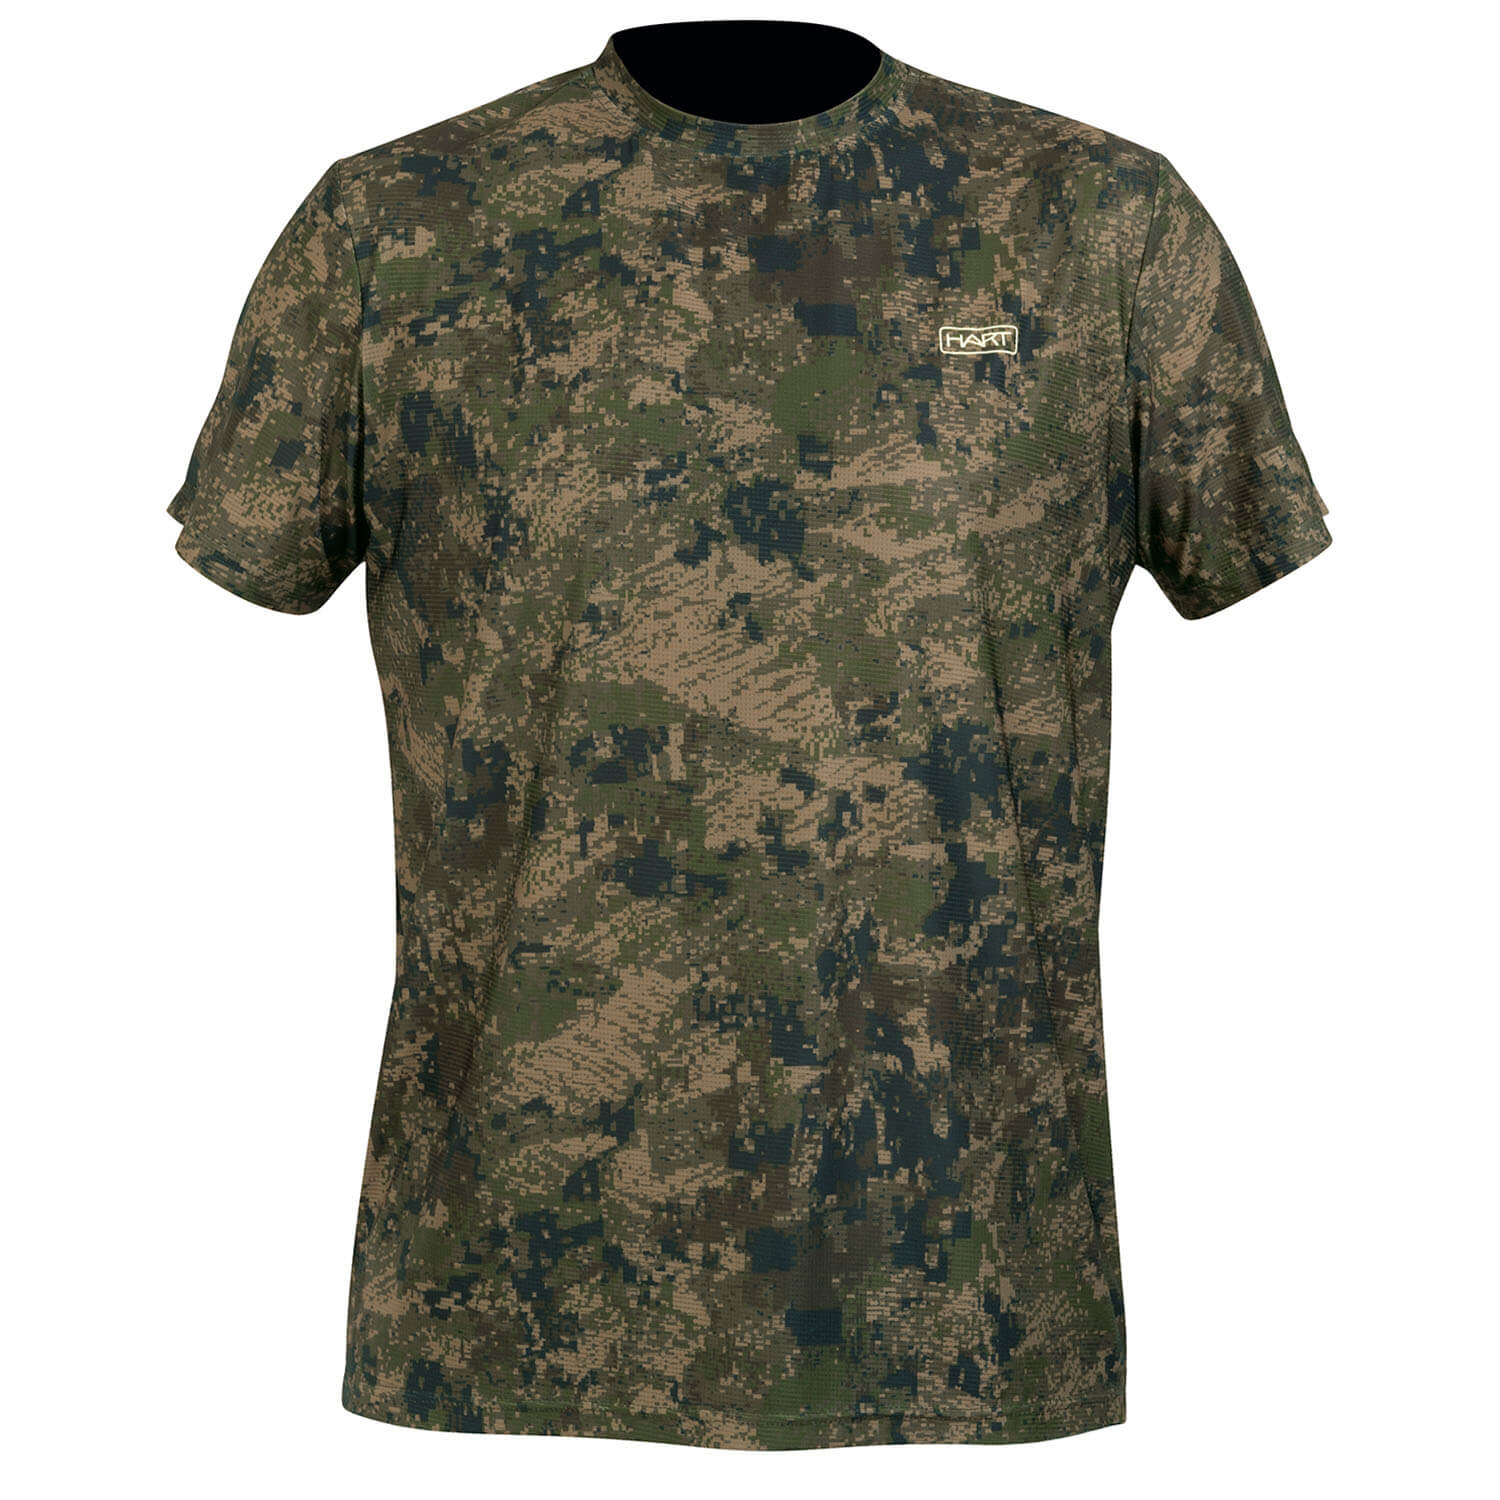  Hart T-shirt Ural-TS - Overhemden & shirts